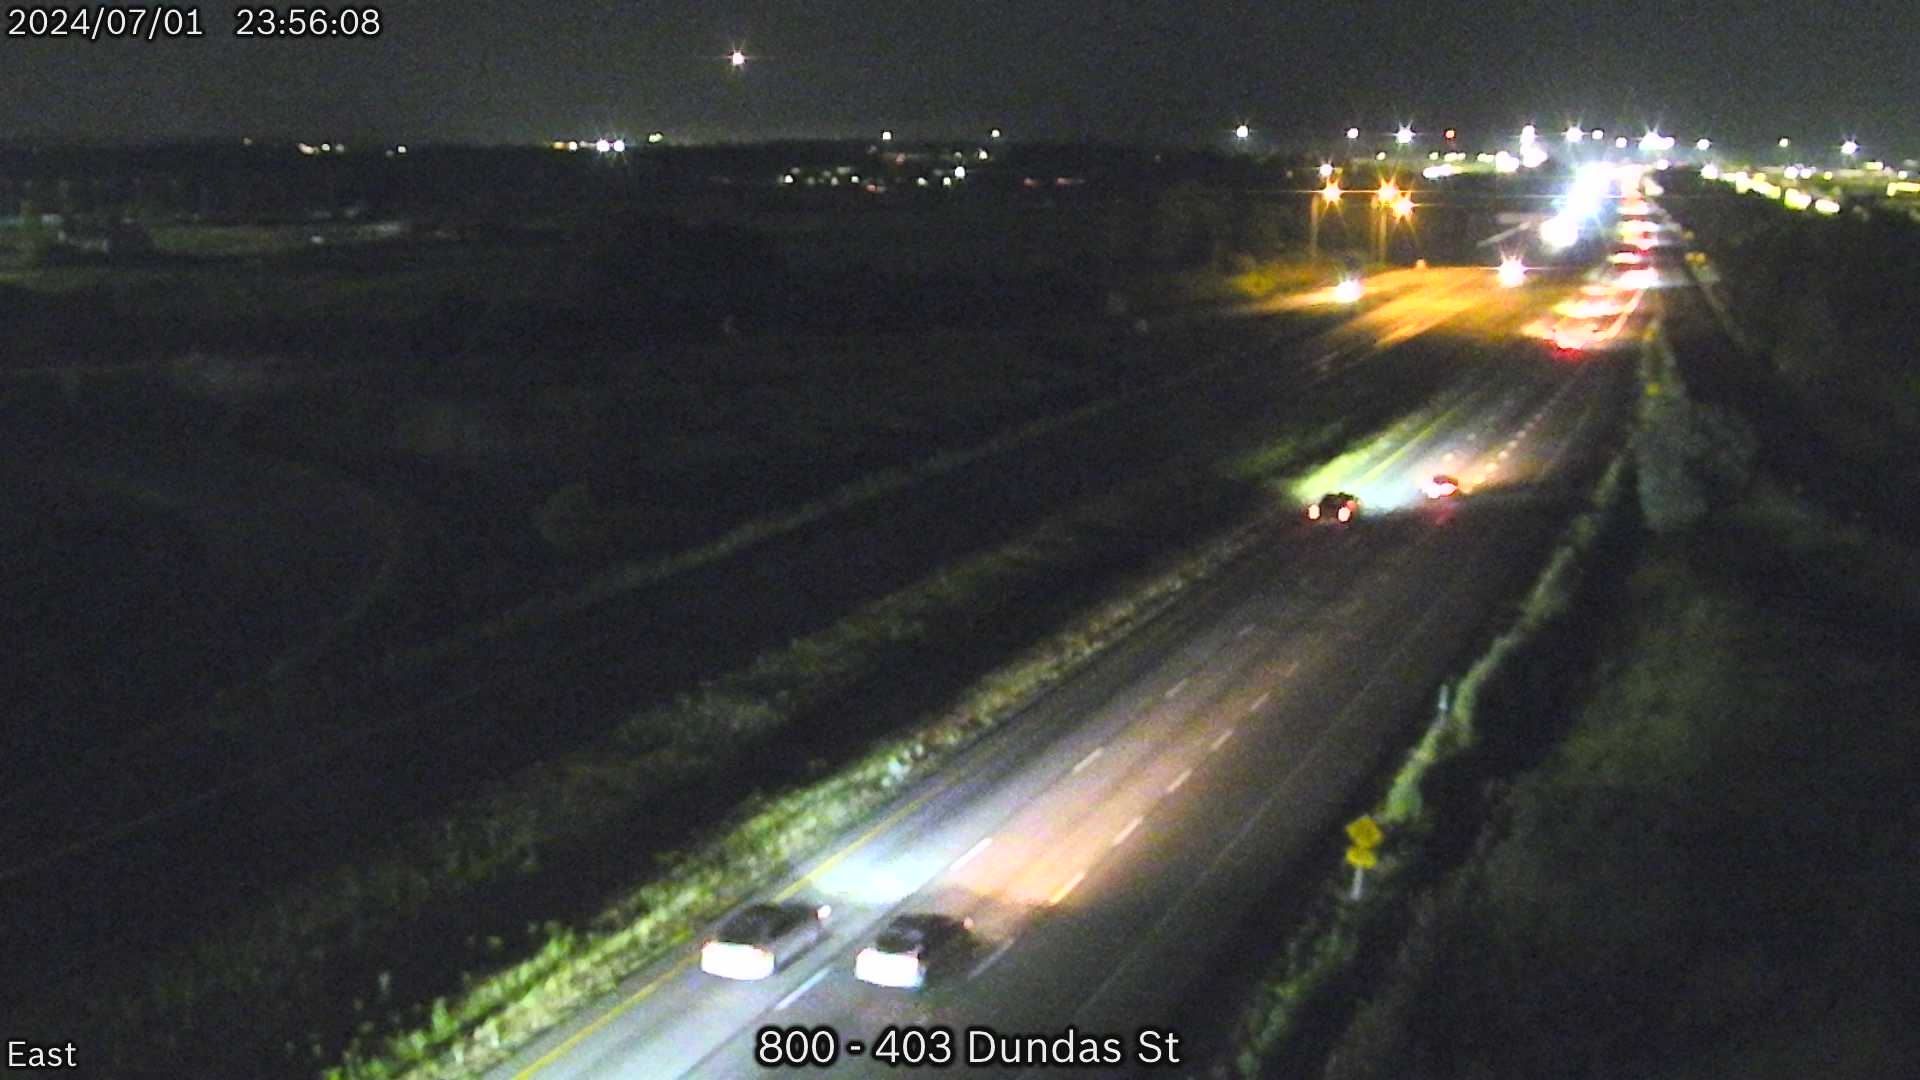 Highway 403 near Dundas St. Traffic Camera